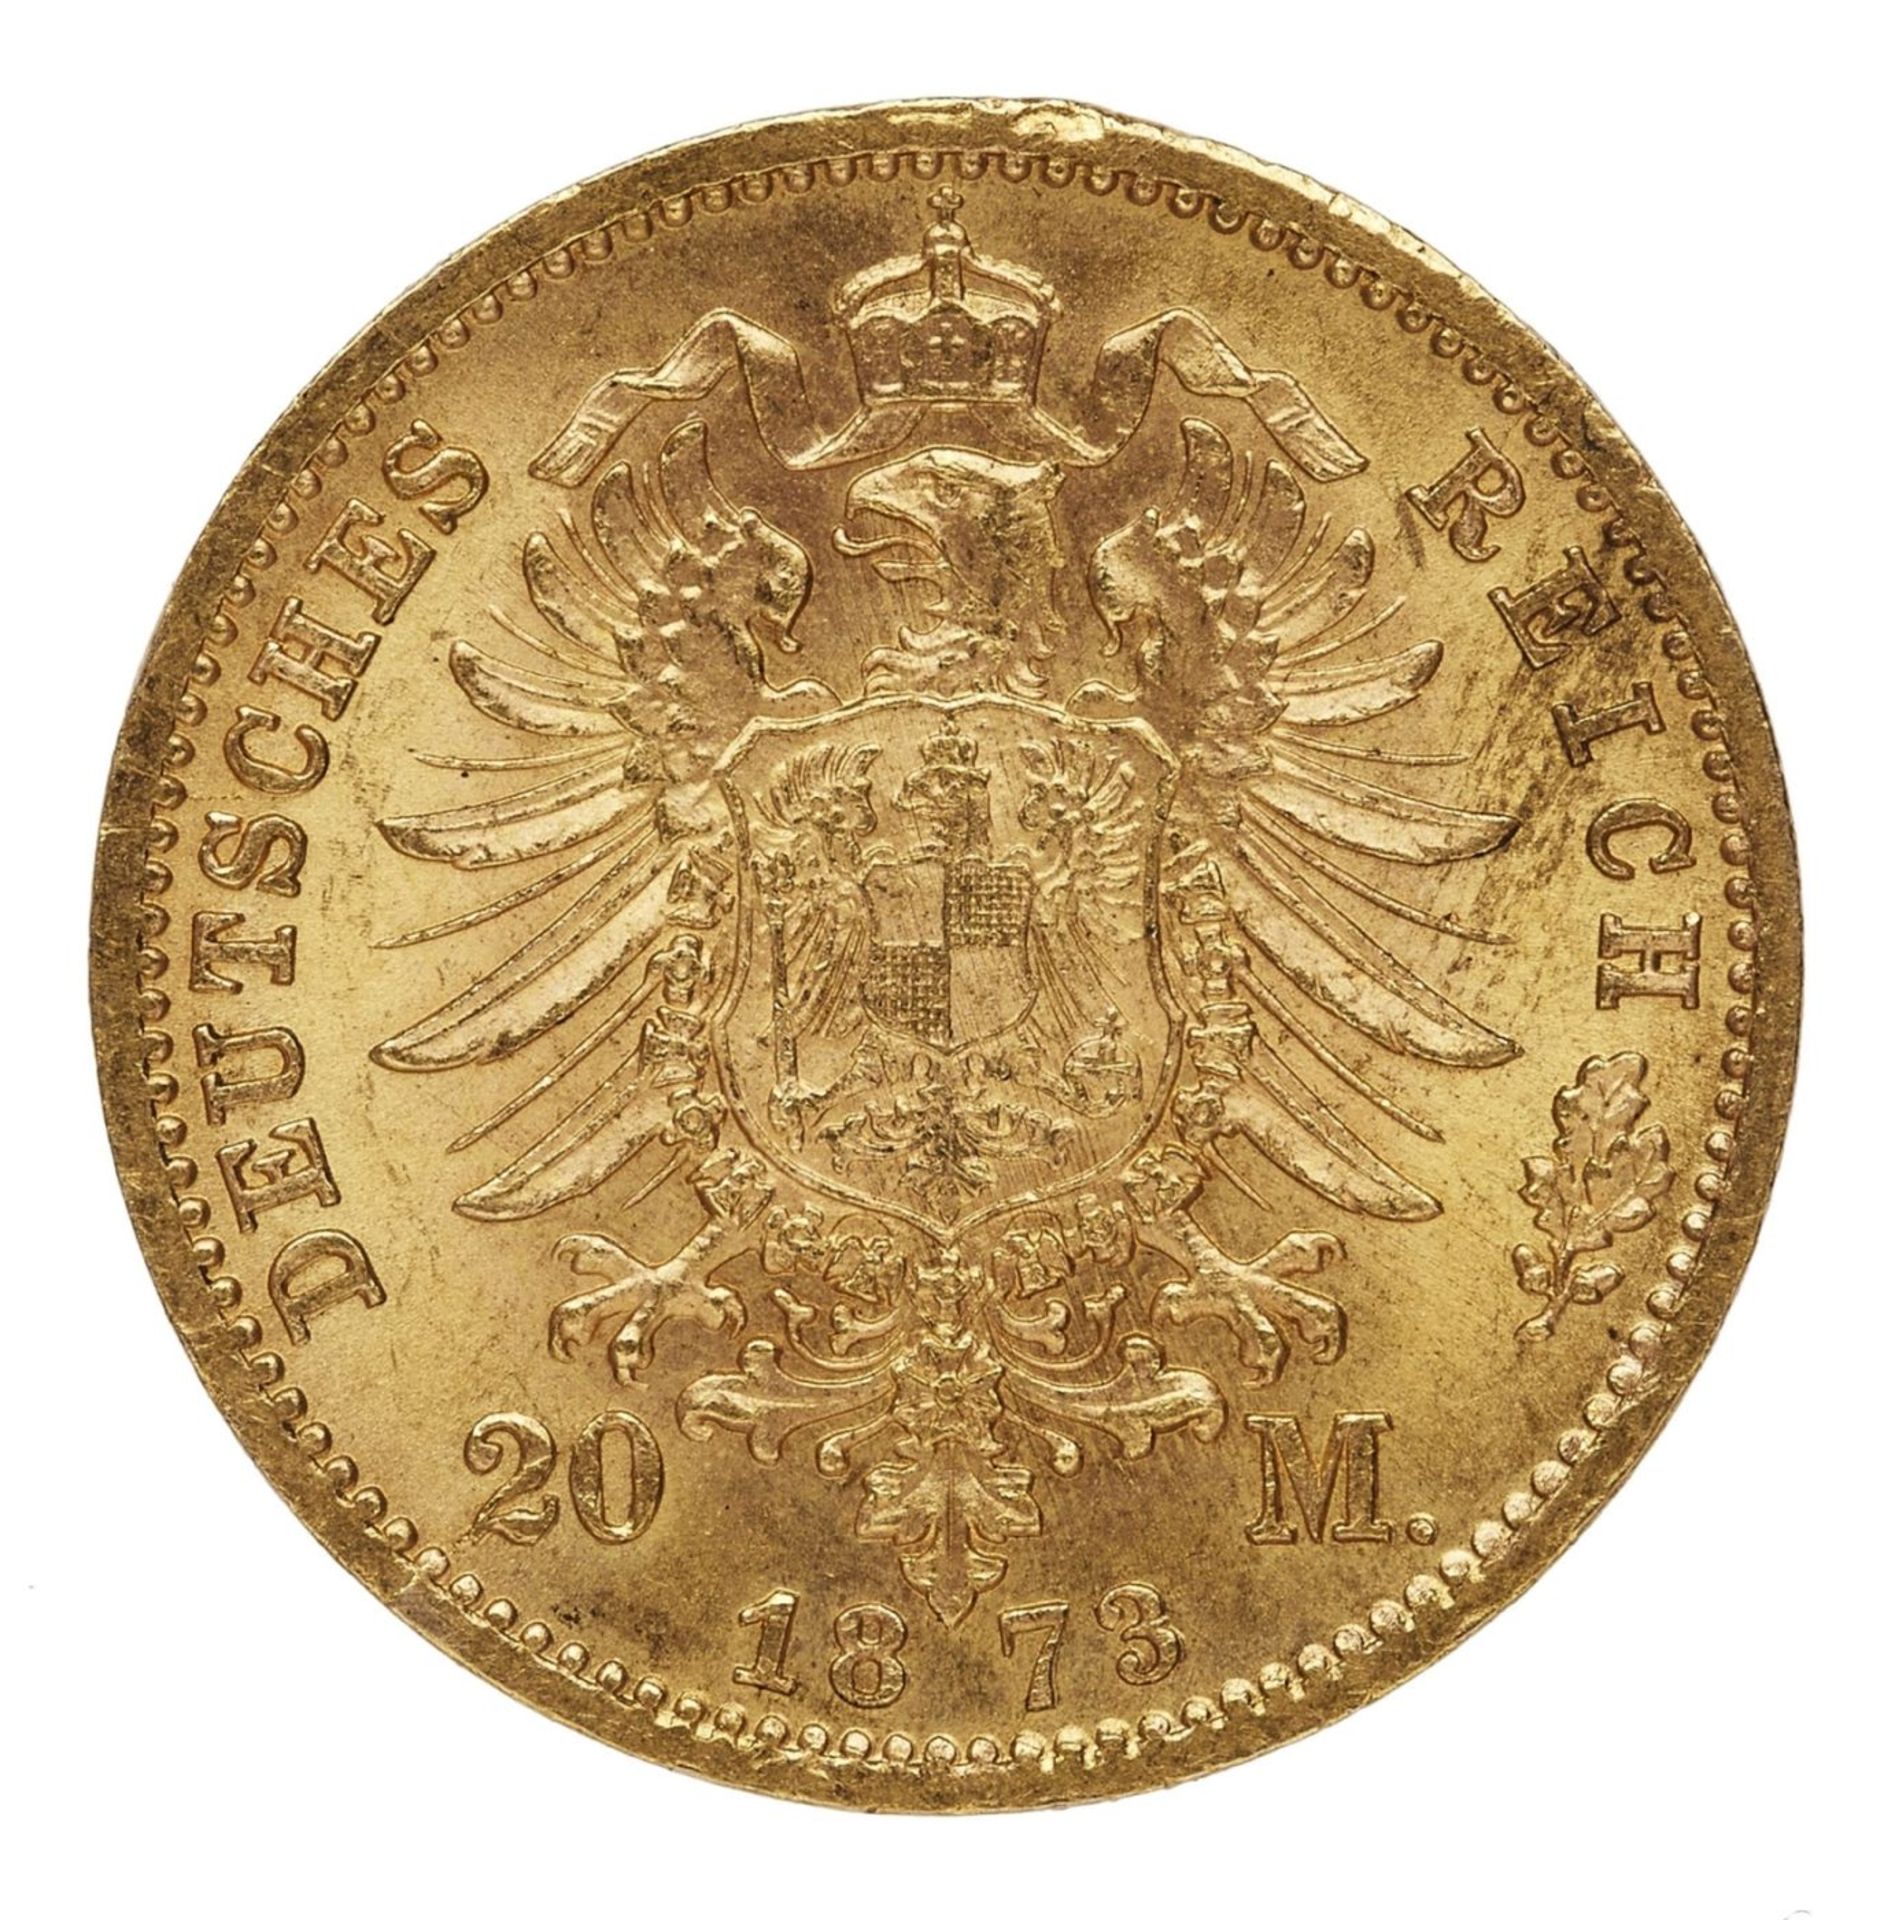 Goldmünze 20 Mark, Kaiser Wilhelm, Frankfurt 1873 - Bild 2 aus 2